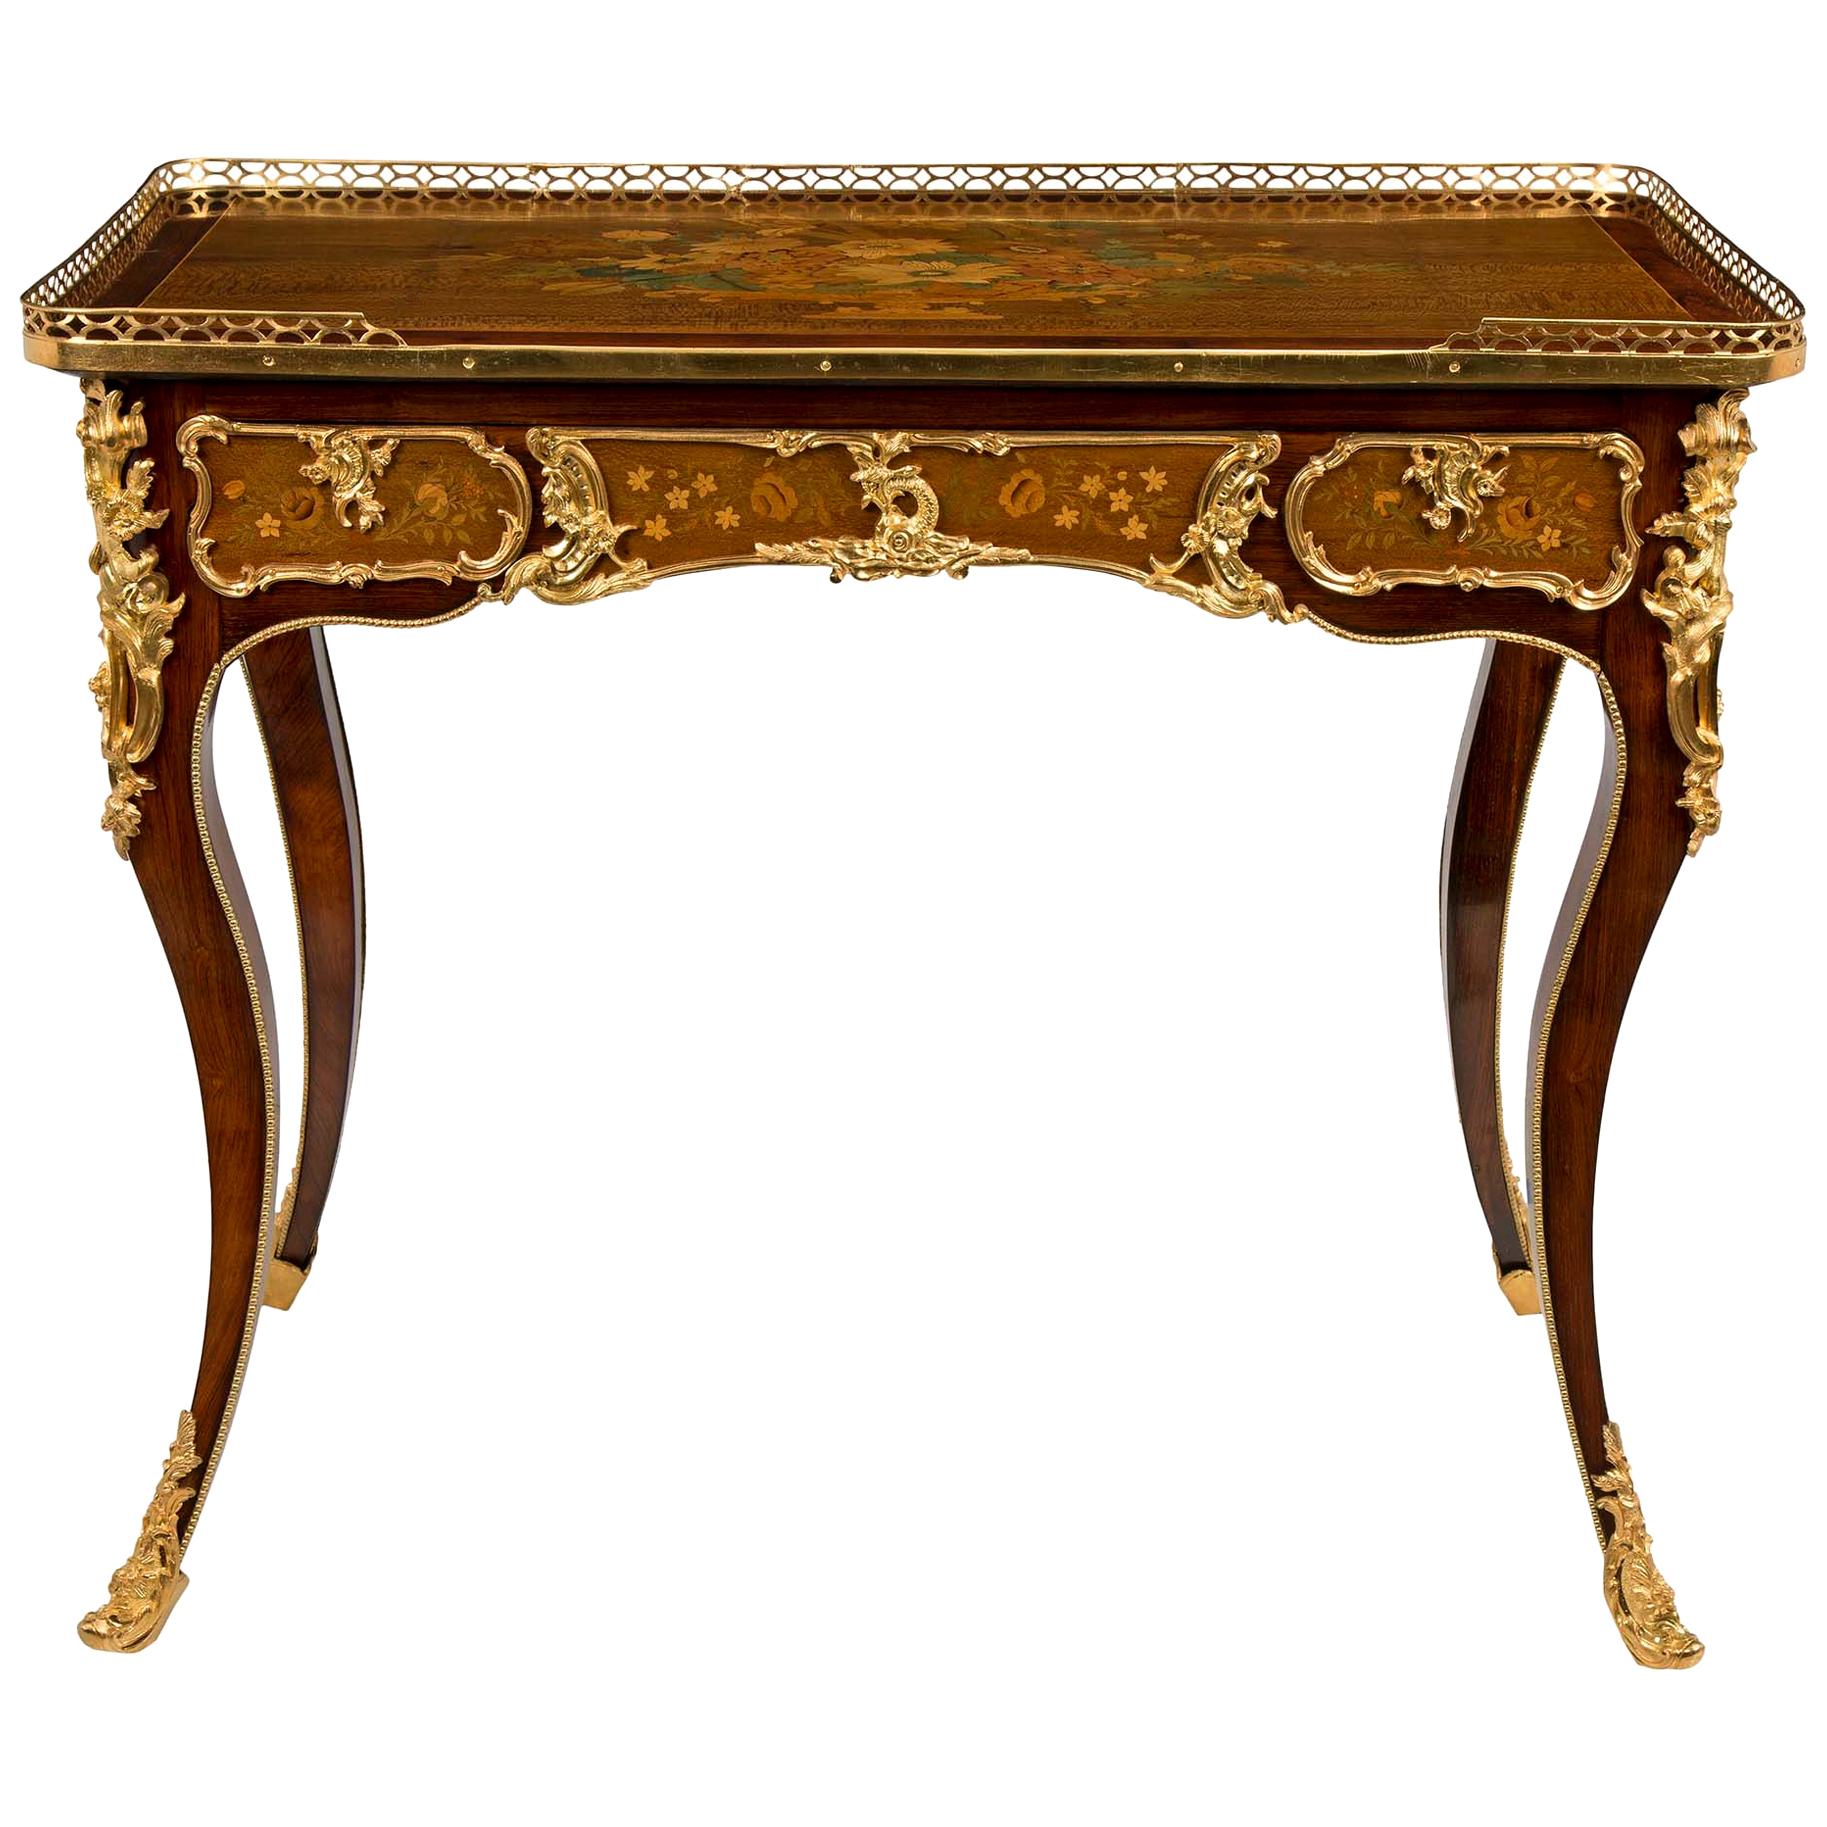 Table d'appoint/bureau à écrire français de style Louis XV du 19ème siècle